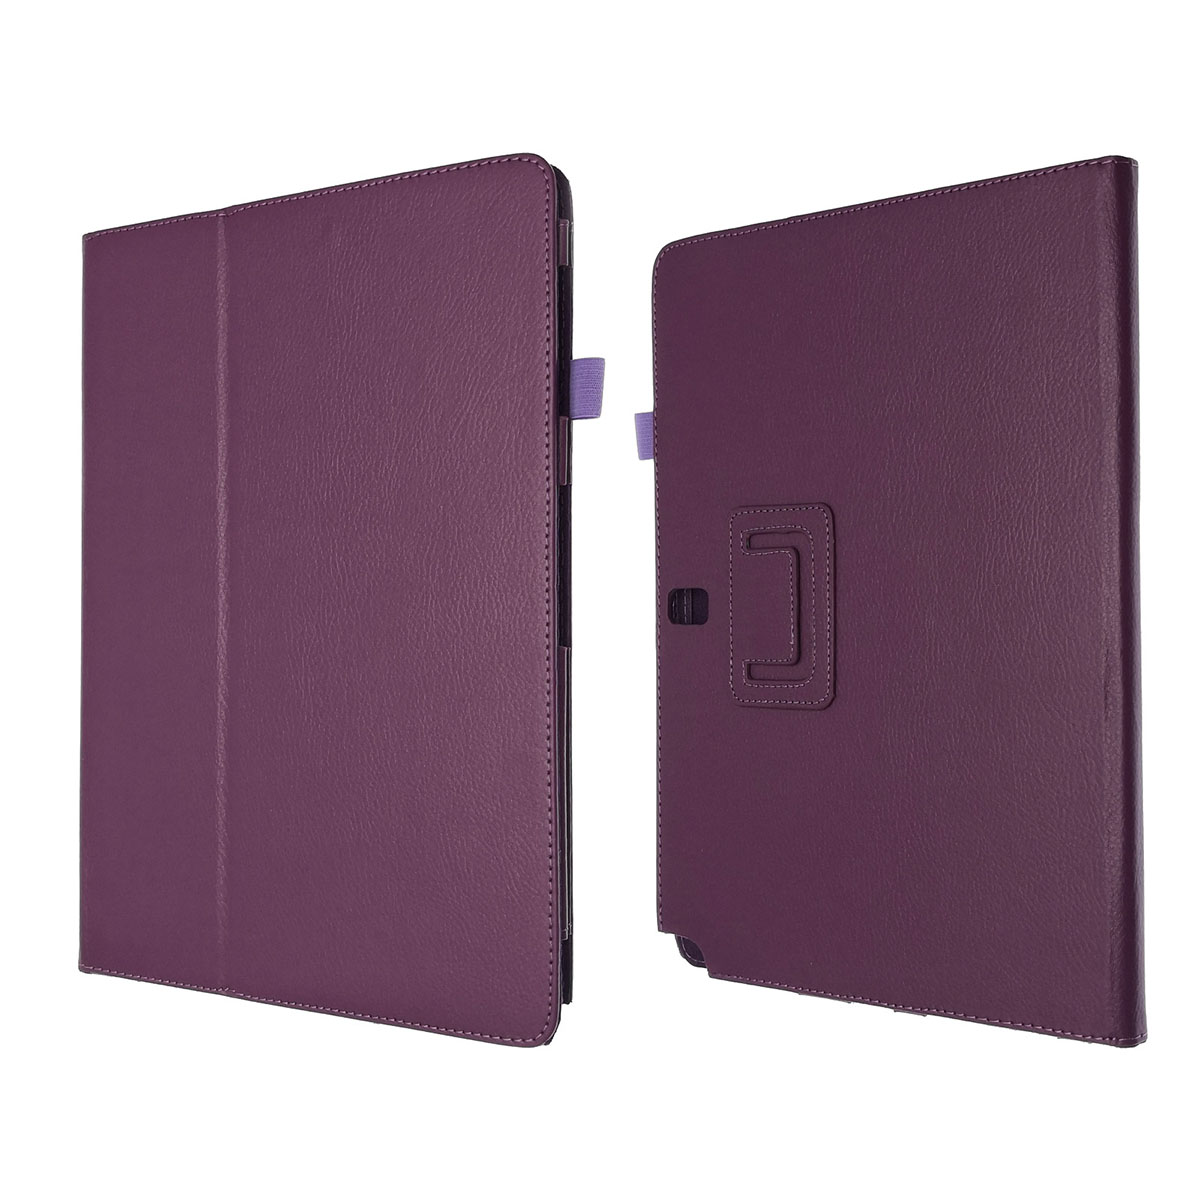 Чехол книжка для SAMSUNG Galaxy Note Pro 12.2 (SM-P900), экокожа, цвет фиолетовый.